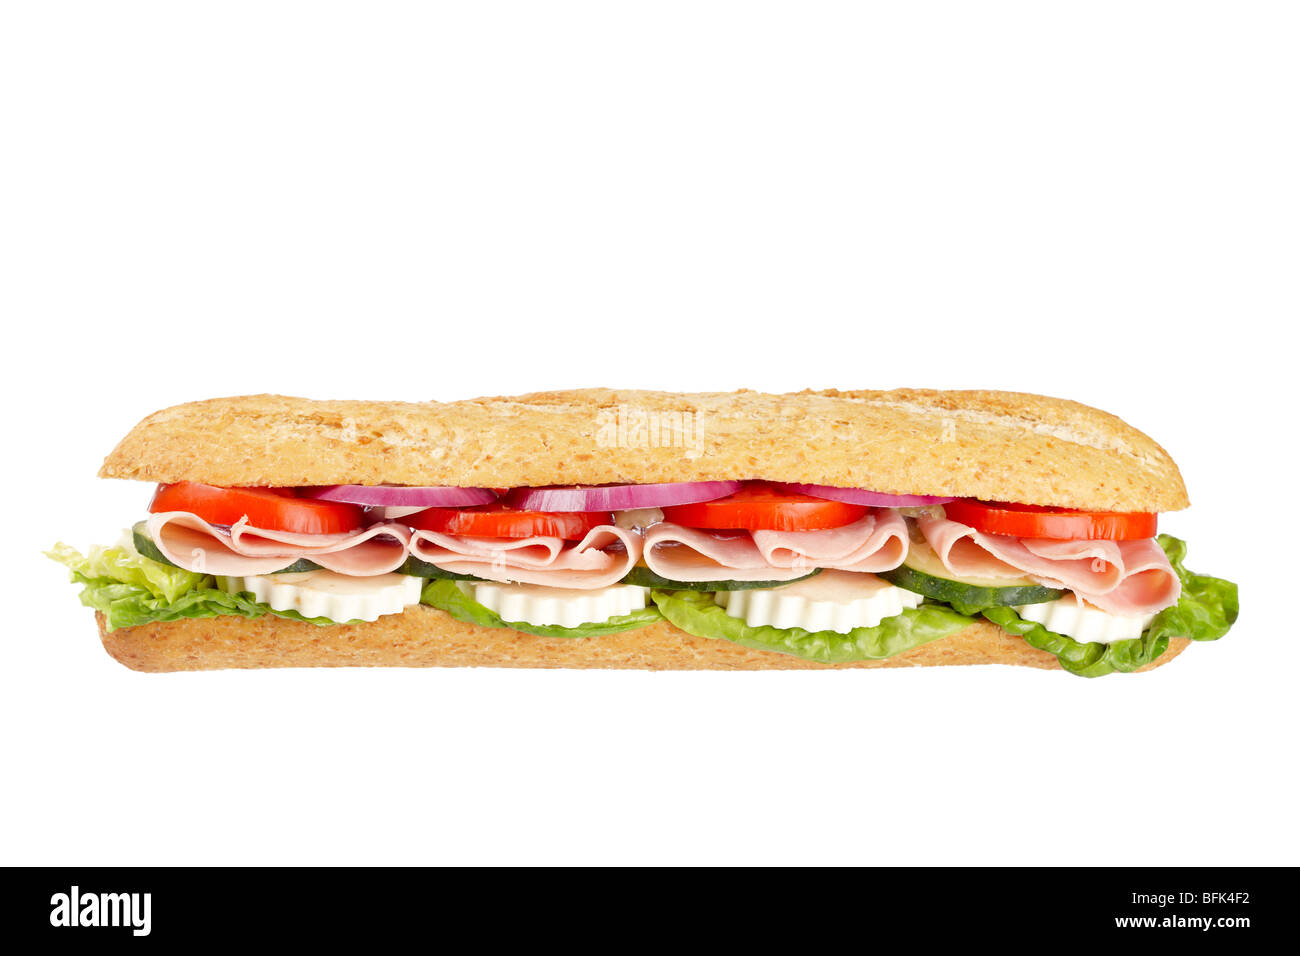 Un sandwich baguette au jambon, l'oignon, la laitue, les tomates et le fromage. Profondeur de champ Banque D'Images